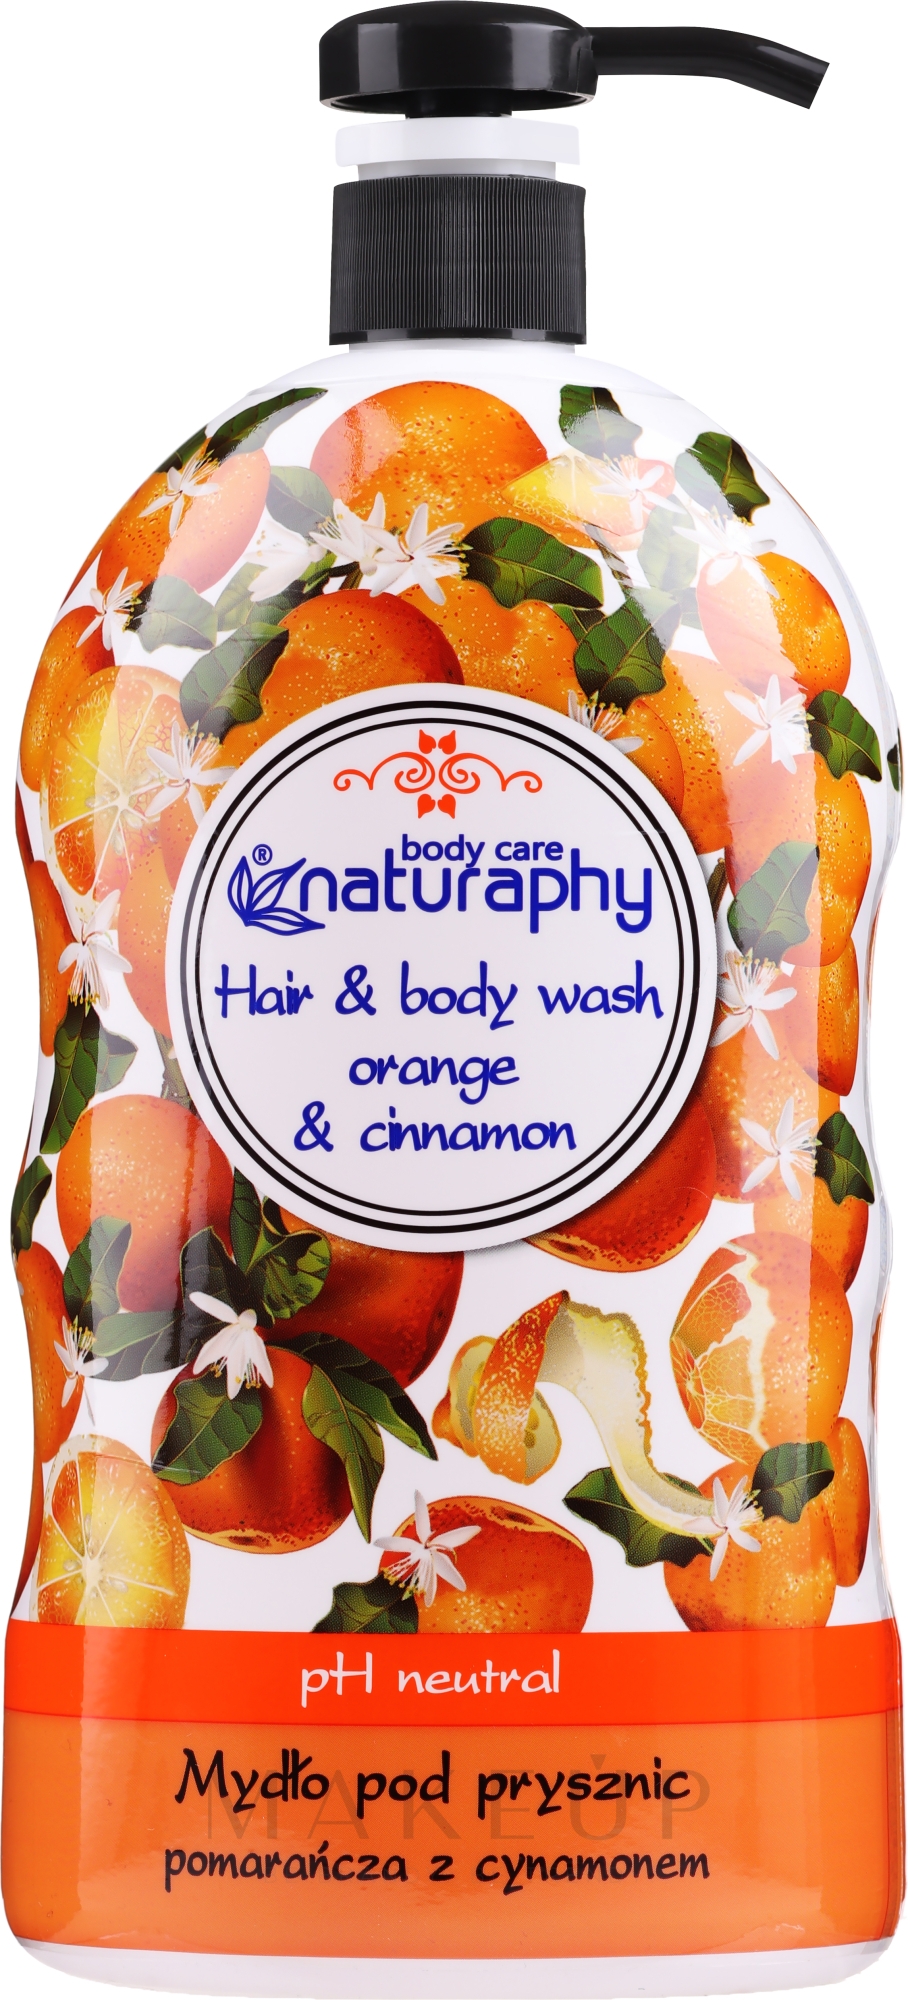 2in1 Shampoo und Duschgel mit Orange und Zimt - Naturaphy Orange & Cinnamon Hair & Body Wash — Foto 1000 ml